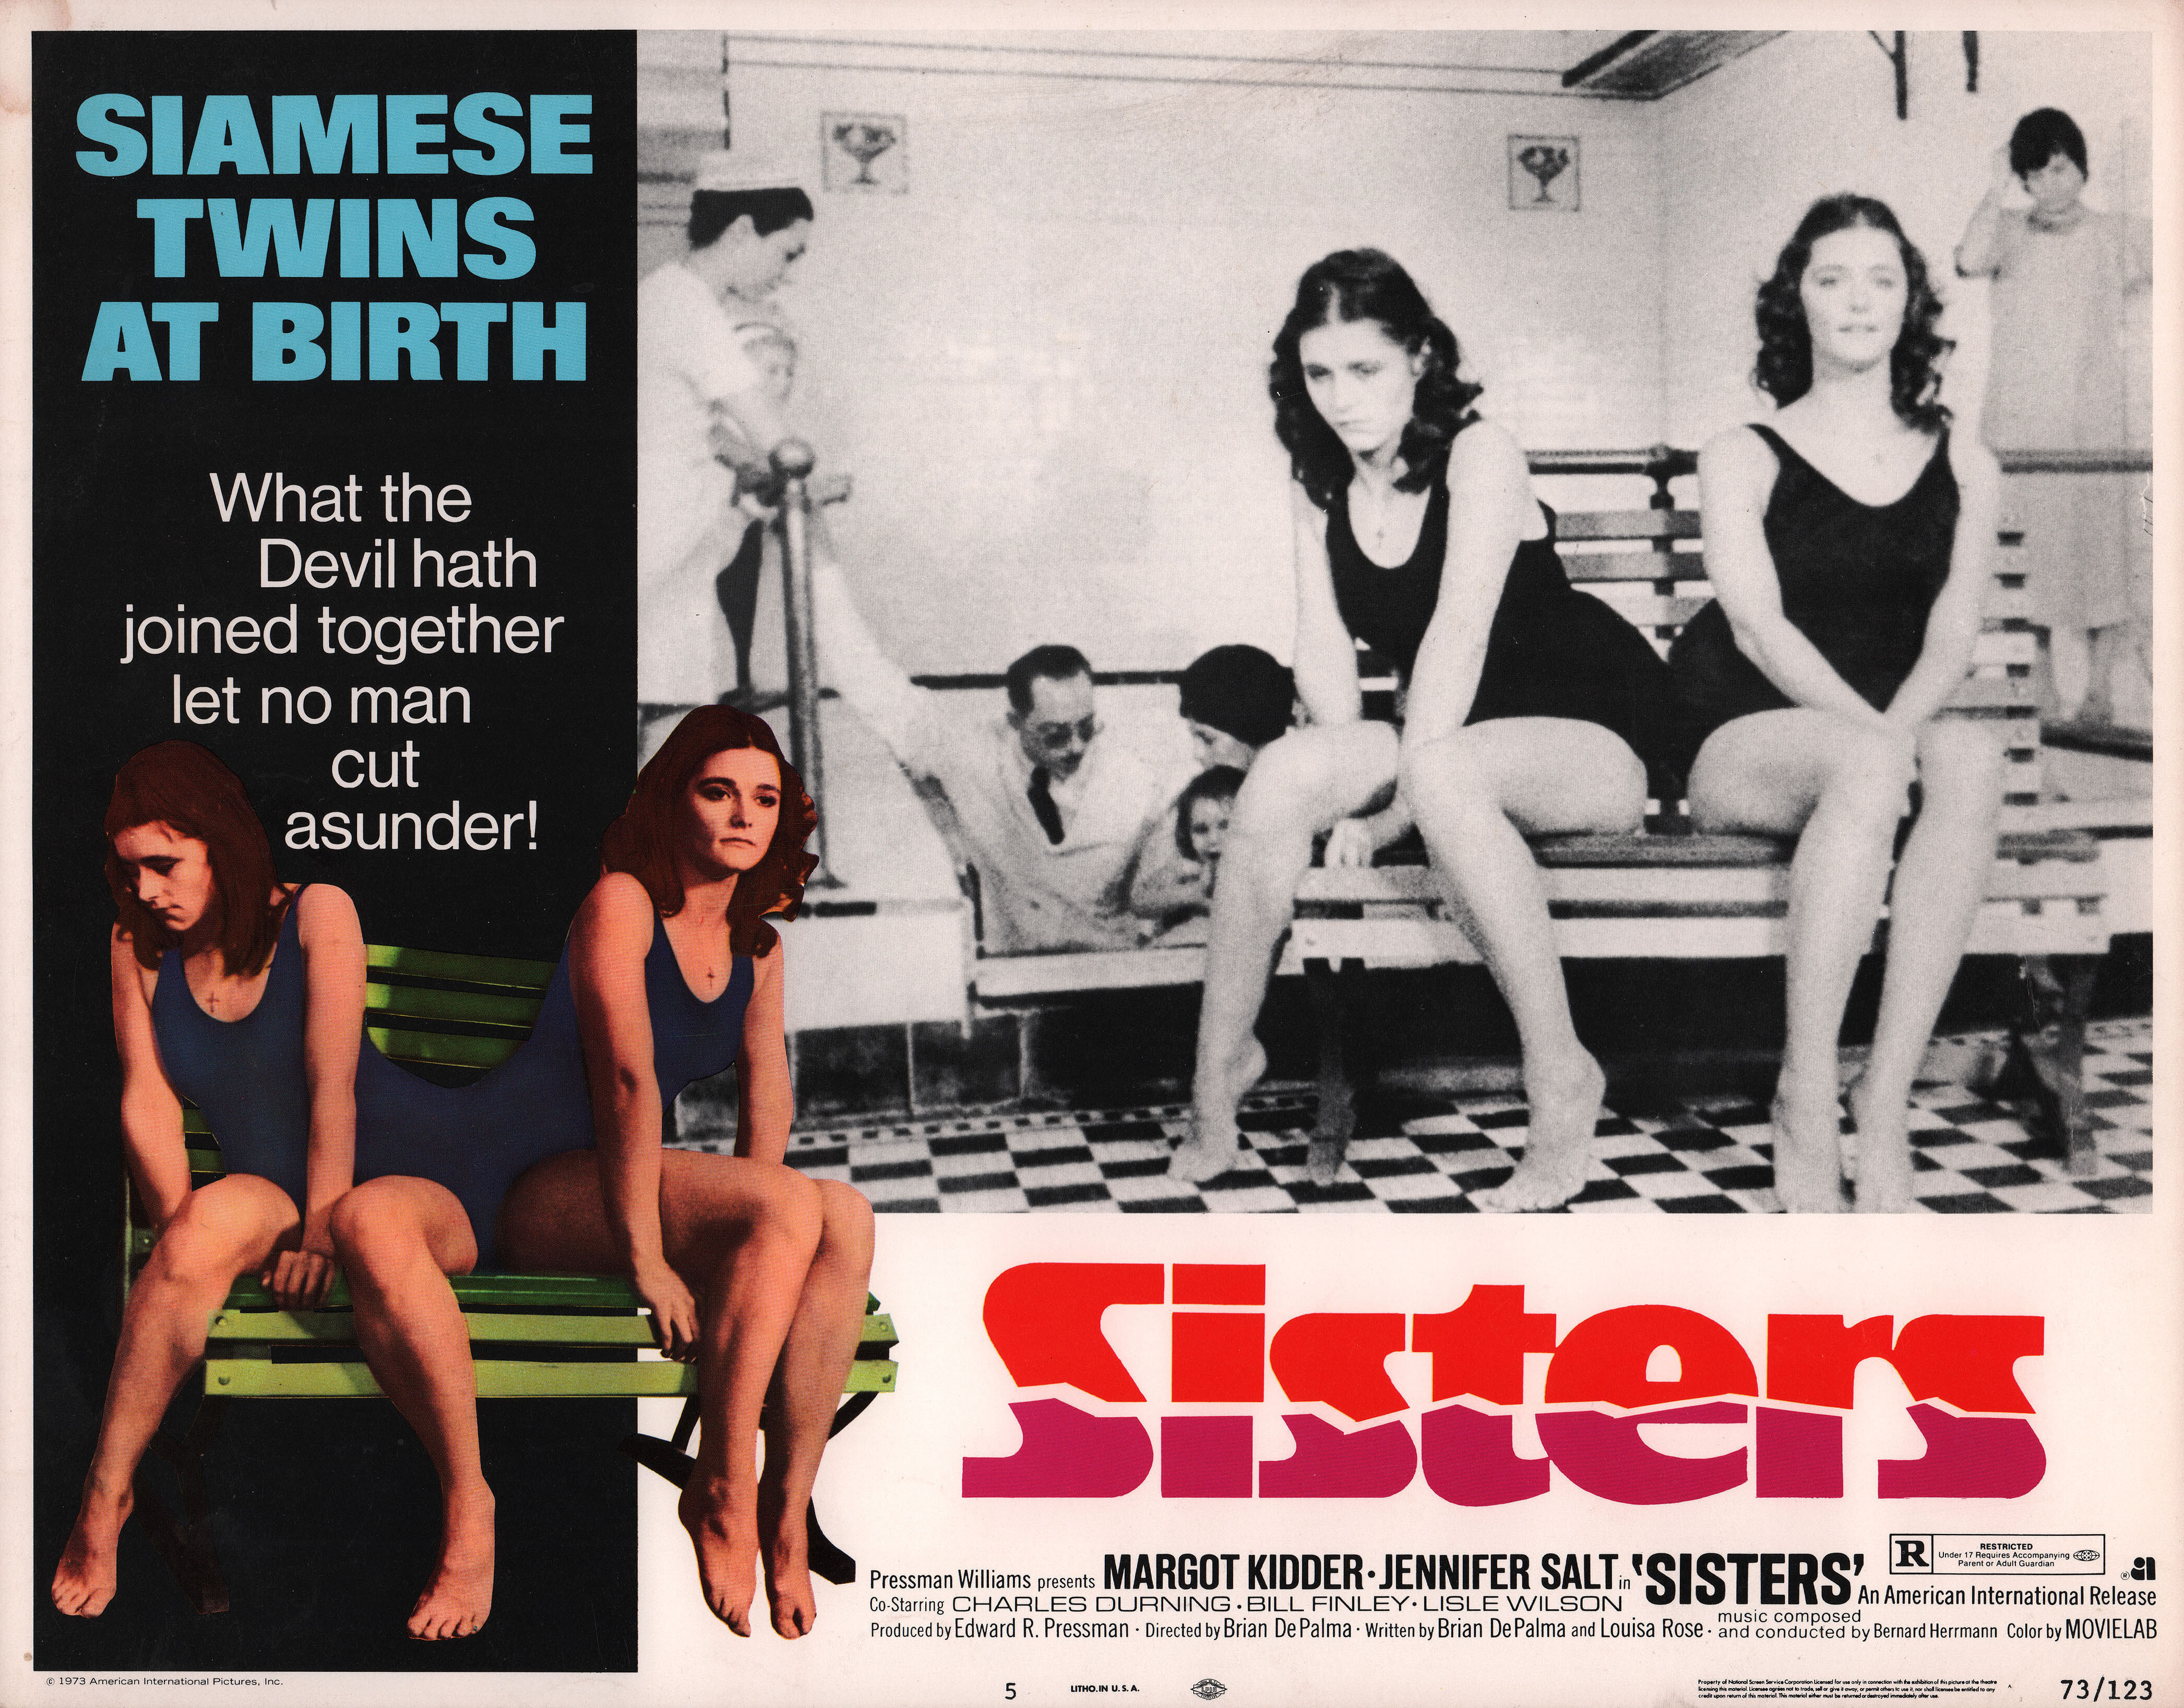 Сёстры (Sisters, 1973), режиссёр Брайан Де Пальма, американский постер к фильму (ужасы, 1973 год)